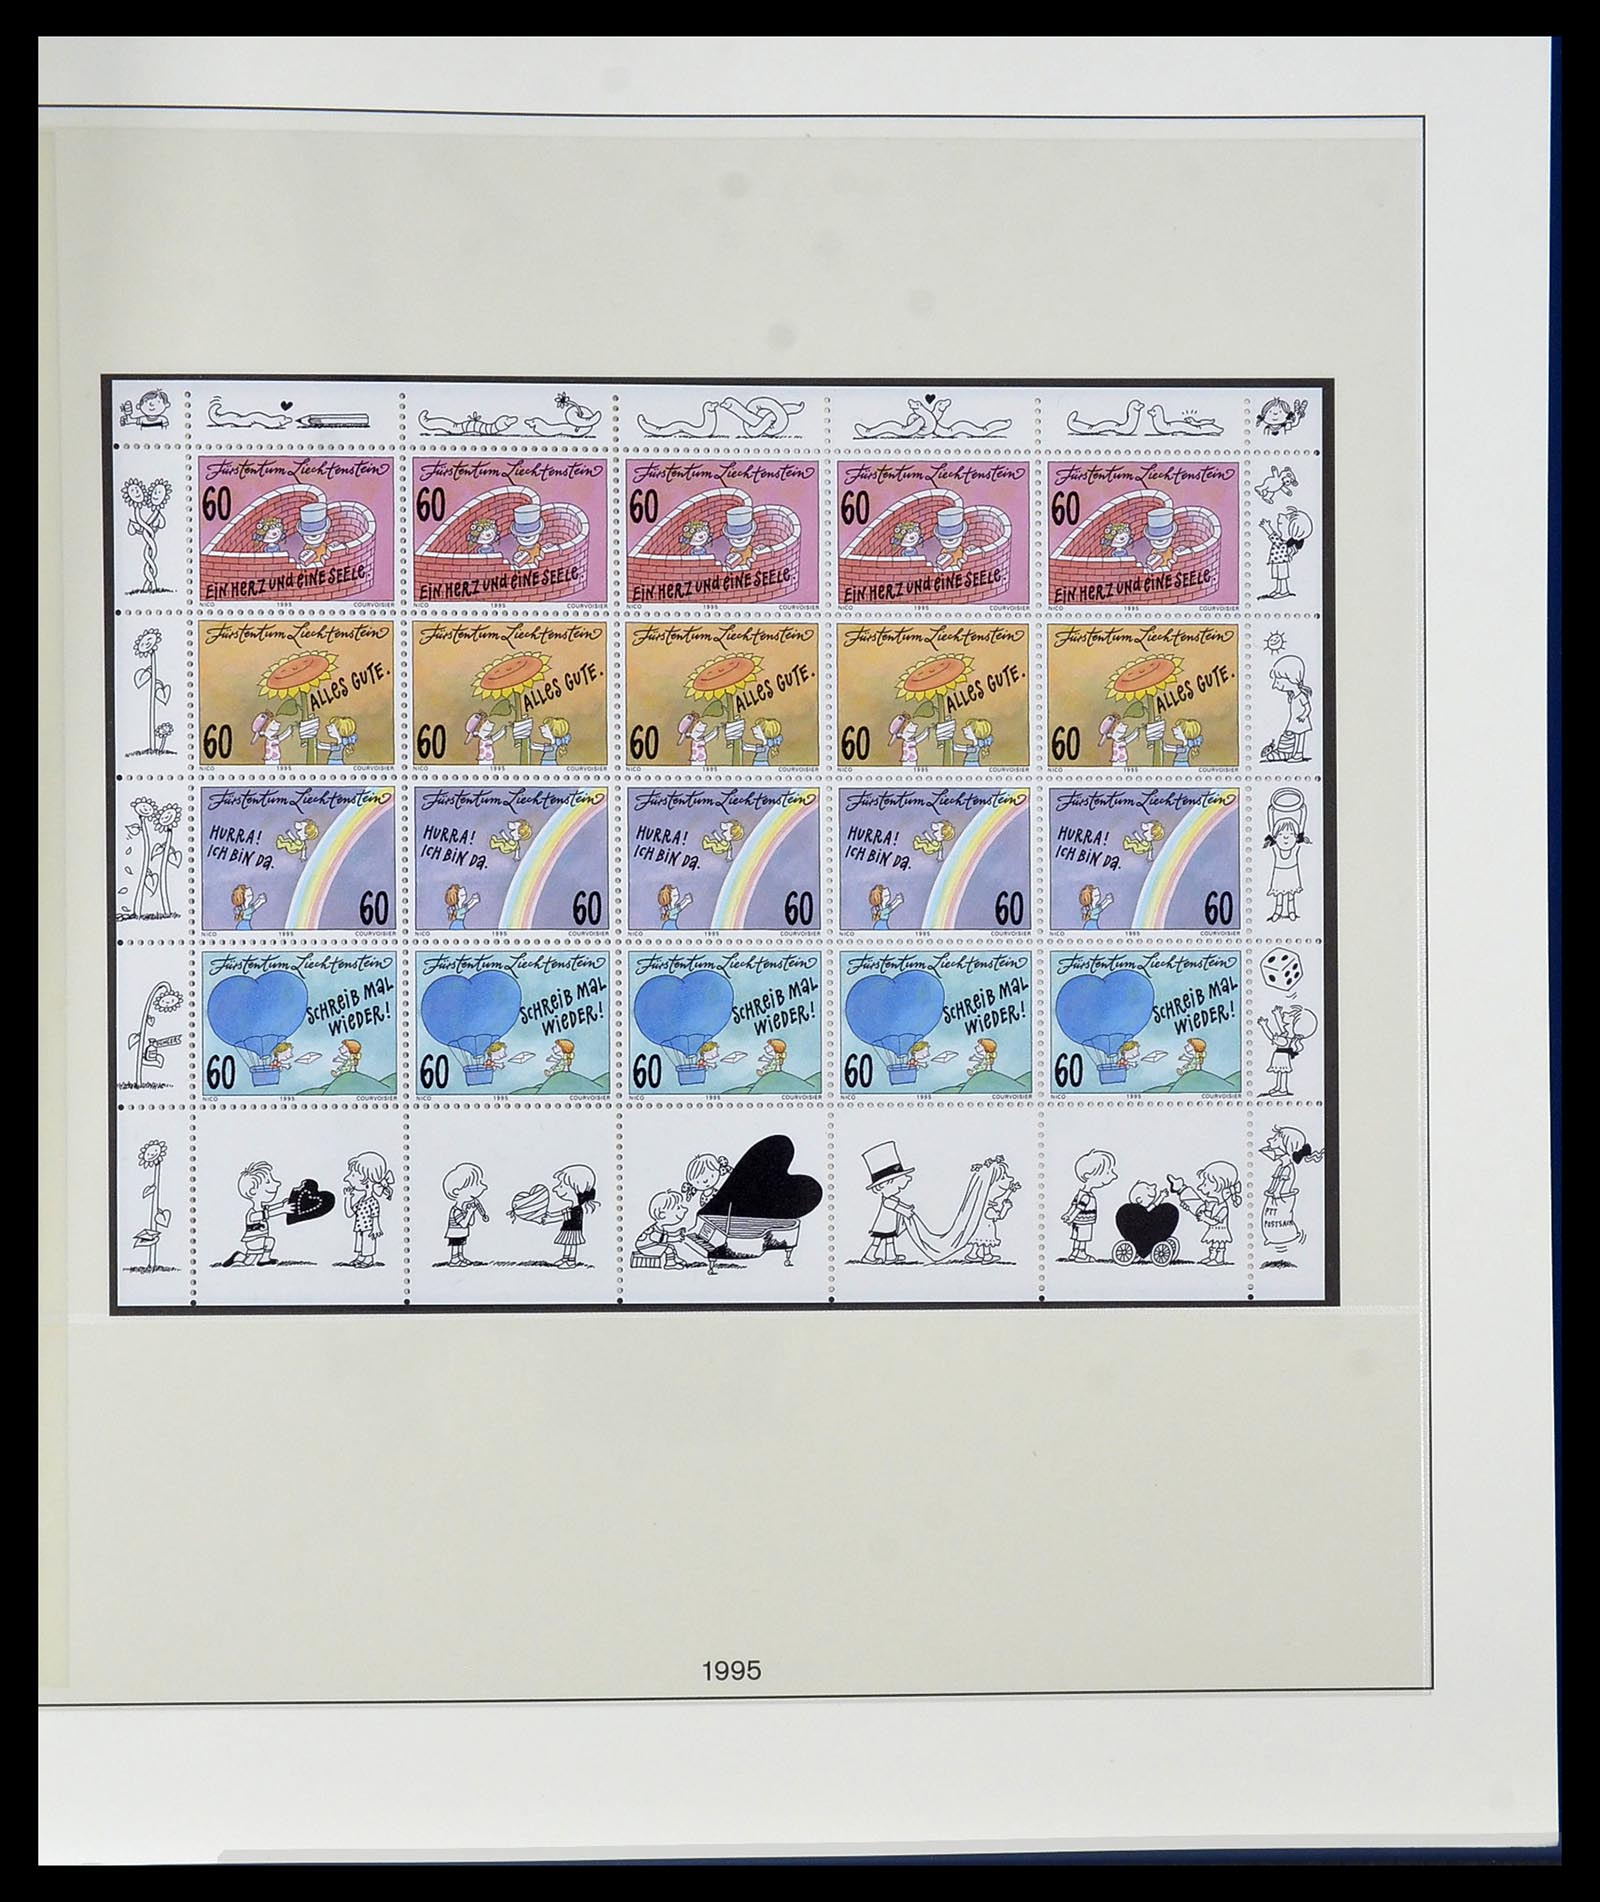 34187 307 - Stamp collection 34187 Liechtenstein kleinbogen 1982-1995.